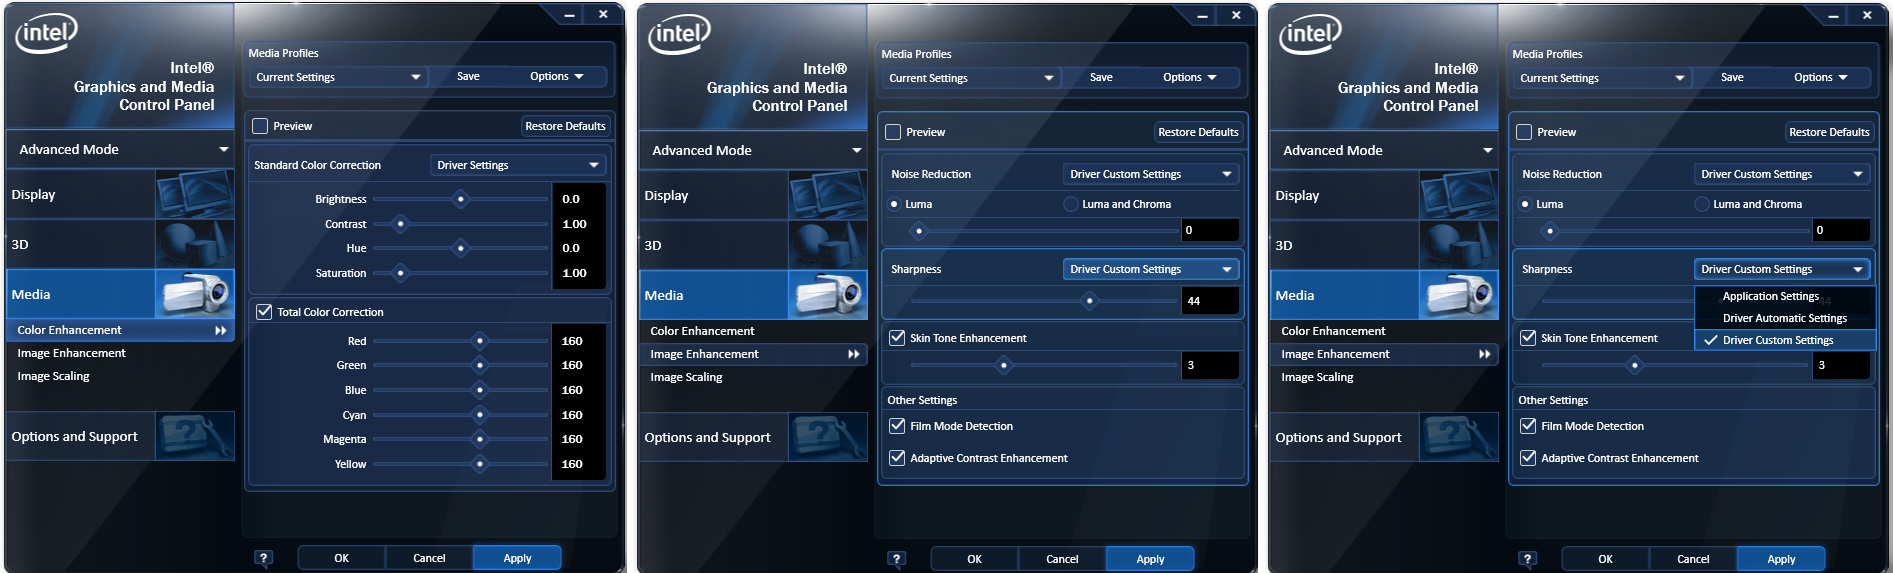 Приложение интел. Параметры графики Интел. Intel приложение. Панель управления графикой и Медиа Intel. Intel программа.